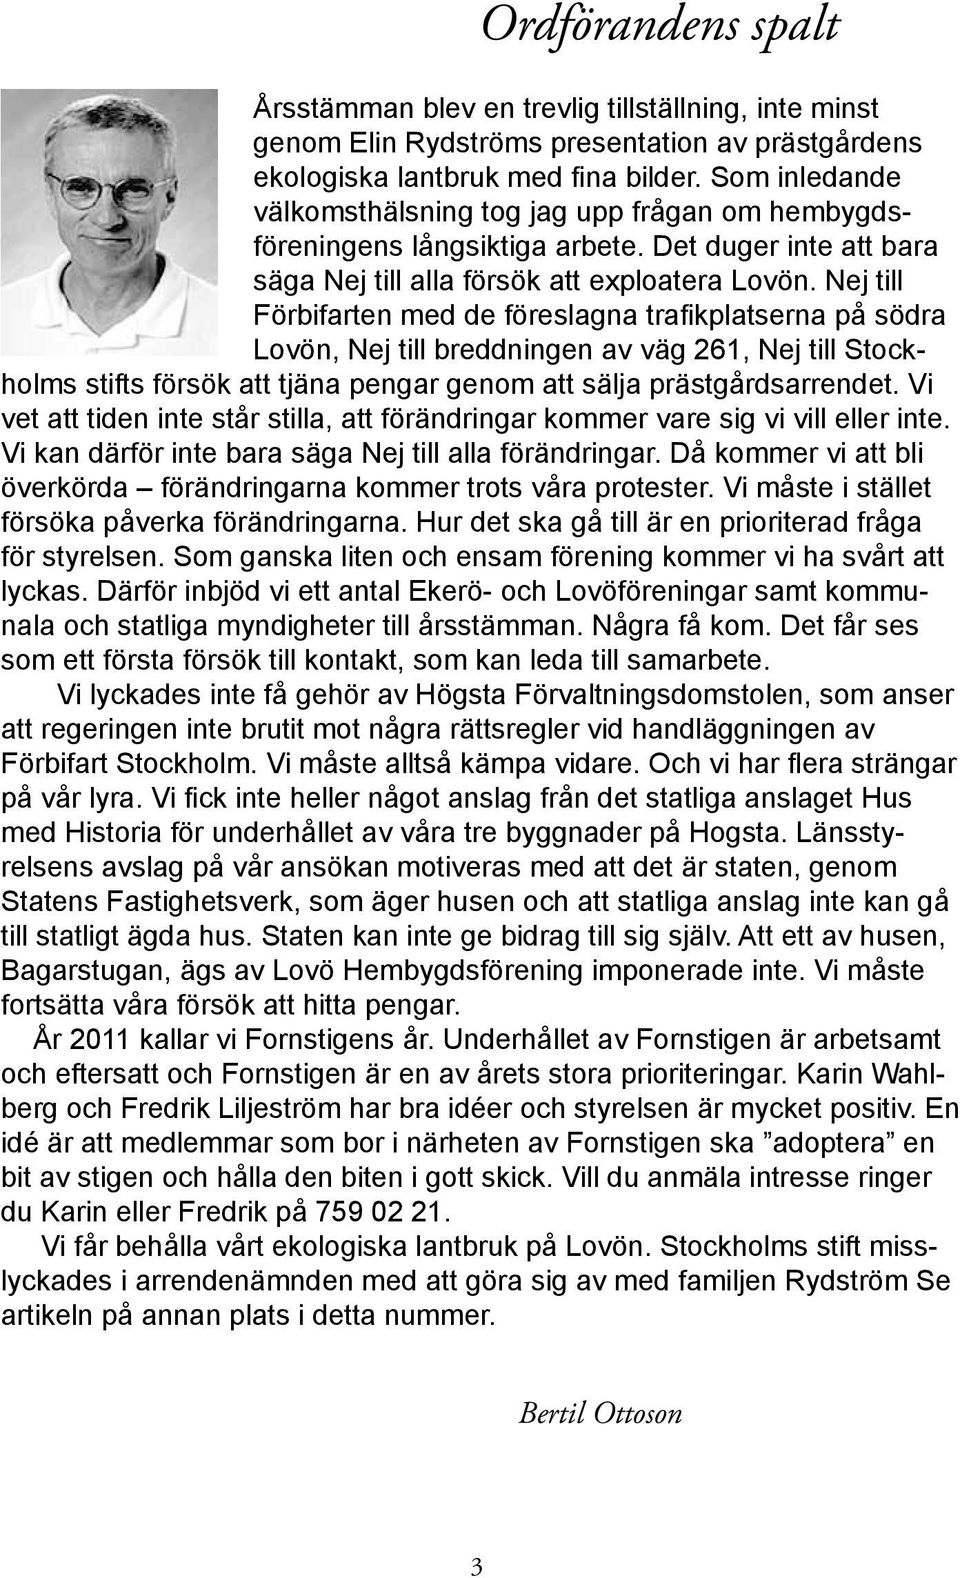 Nej till Förbifarten med de föreslagna trafikplatserna på södra Lovön, Nej till breddningen av väg 261, Nej till Stockholms stifts försök att tjäna pengar genom att sälja prästgårdsarrendet.